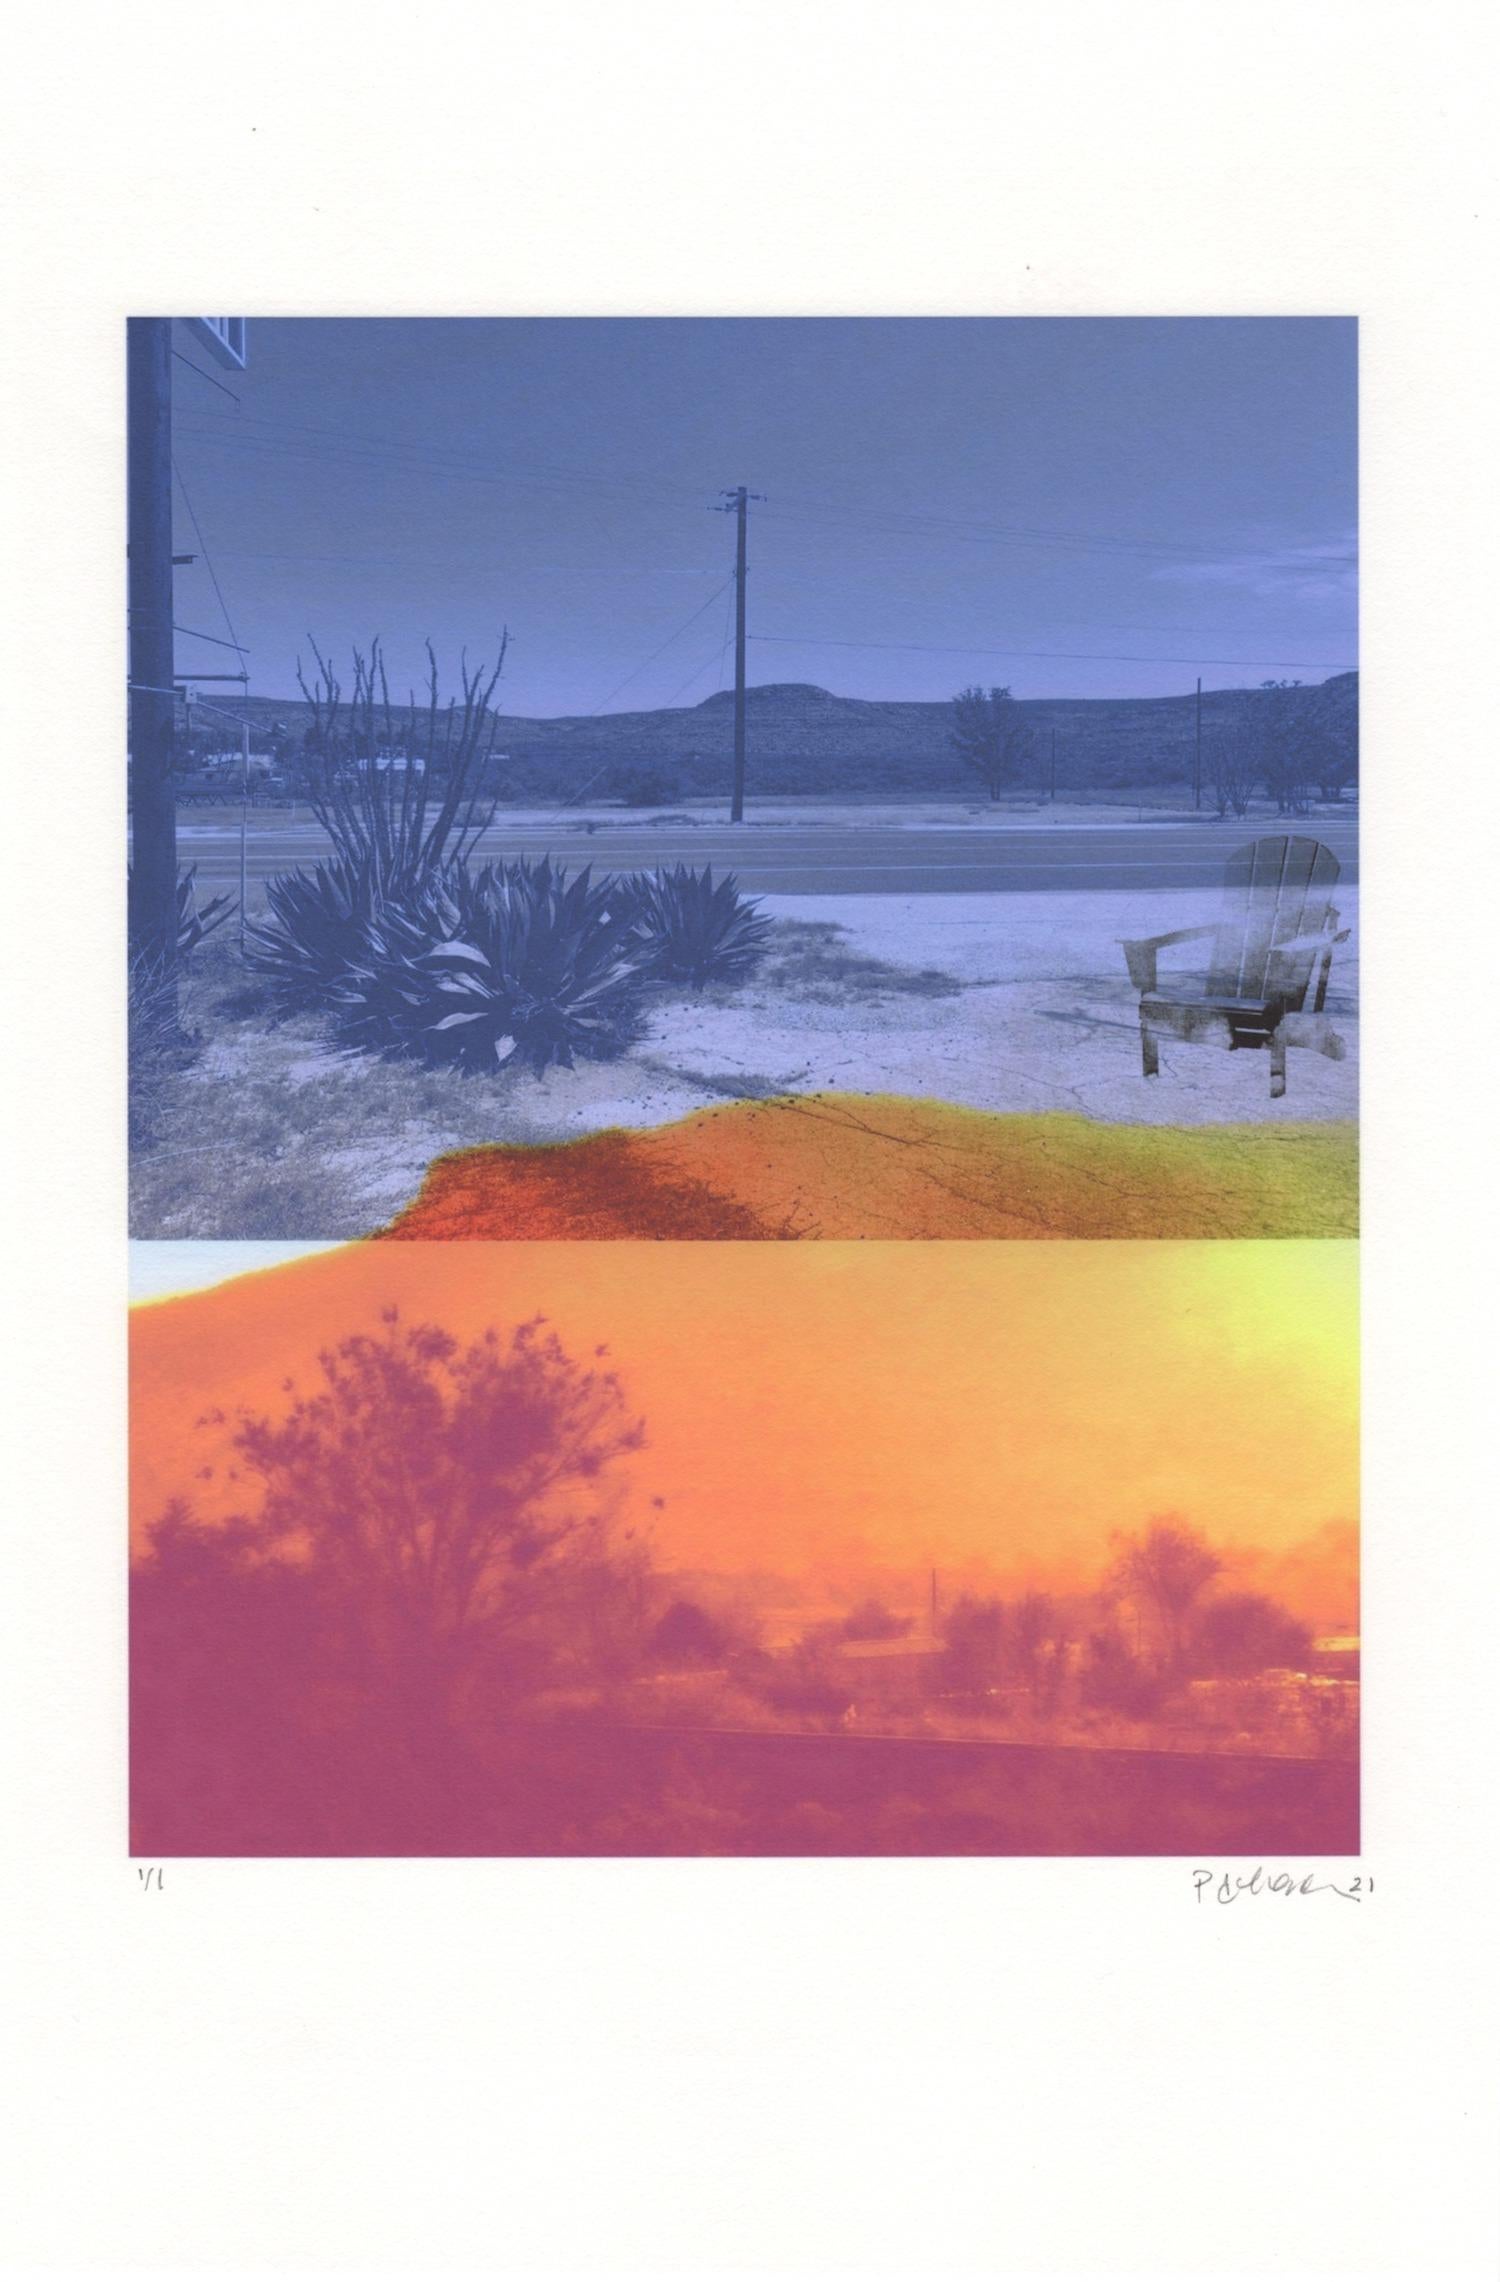 « Scorched (avec la chaise Adirondack), paysage, désert, bleu, orange, monogravure